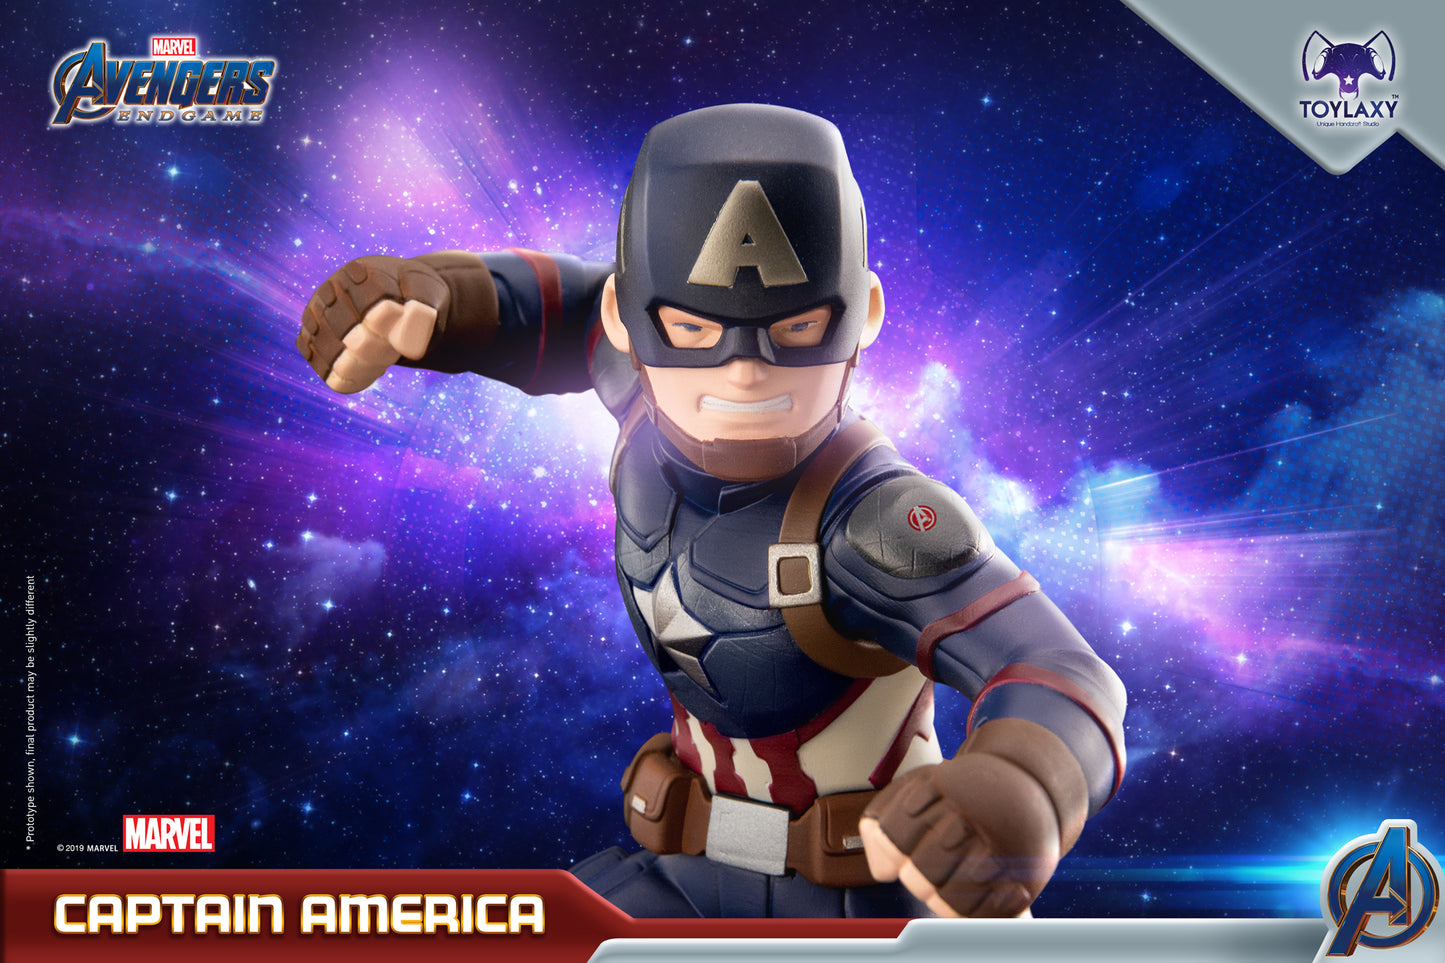 Toylaxy Marvel Avengers Endgame Captain America